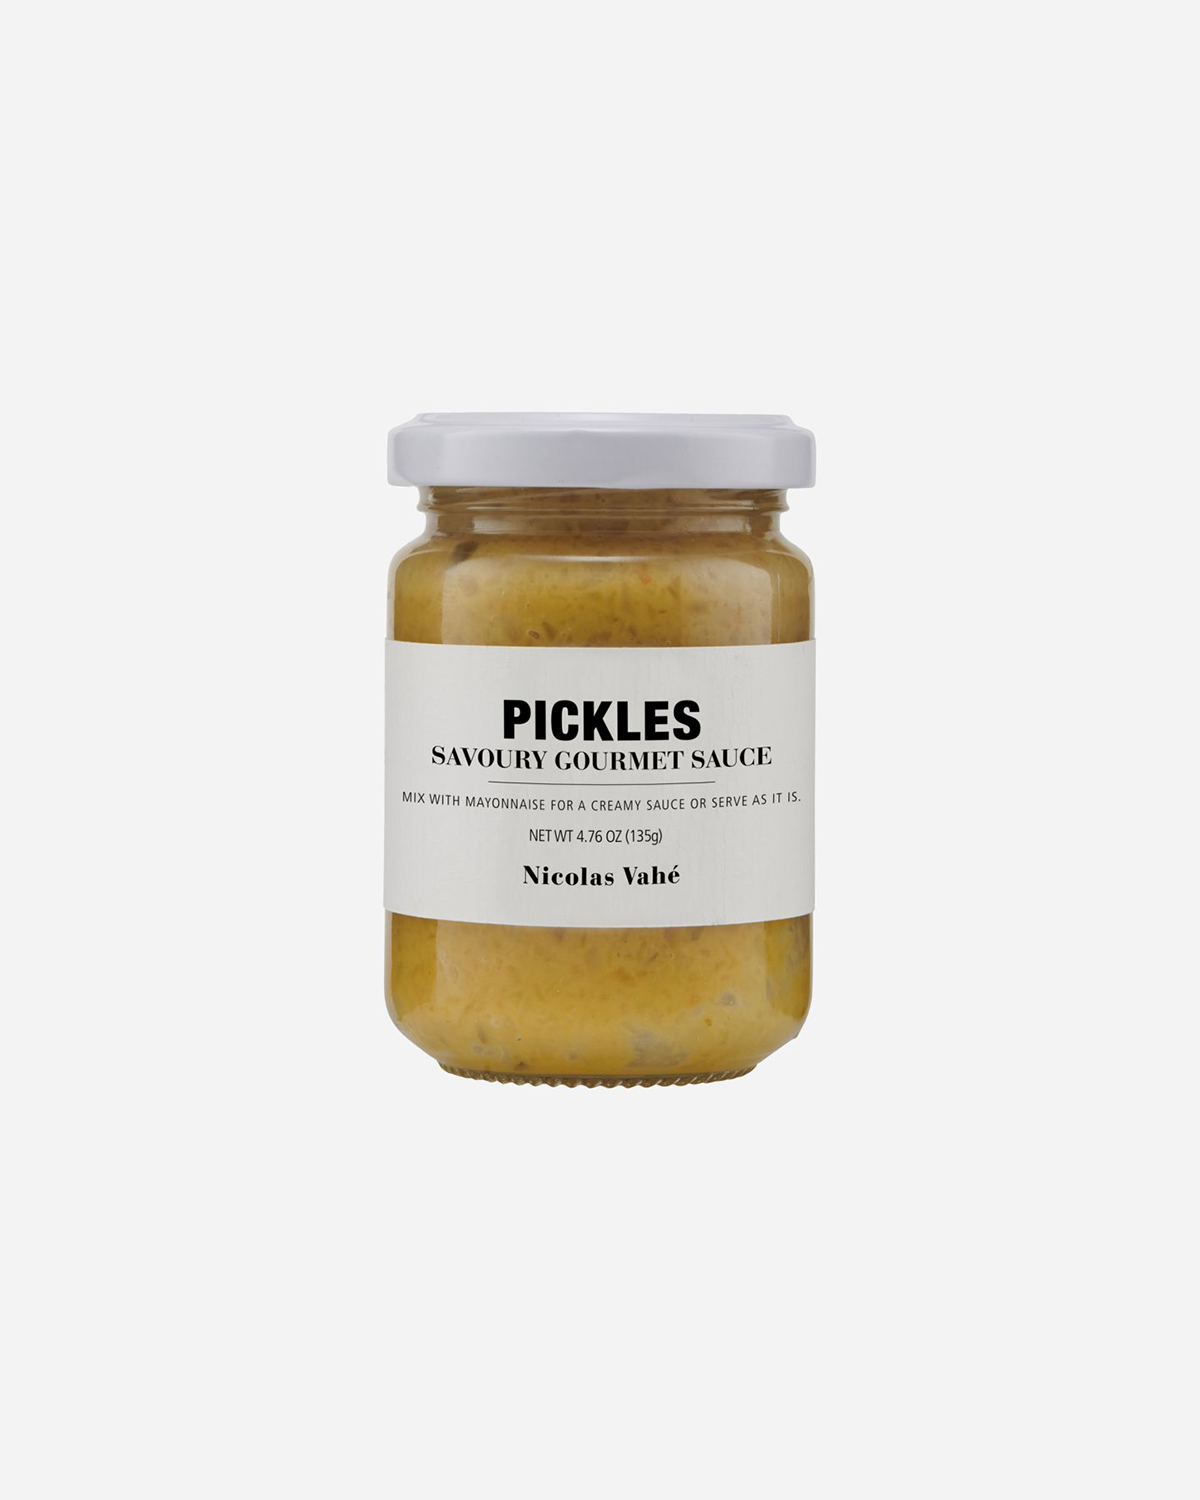 Pickles savoury gourmet sauce, 150 g.